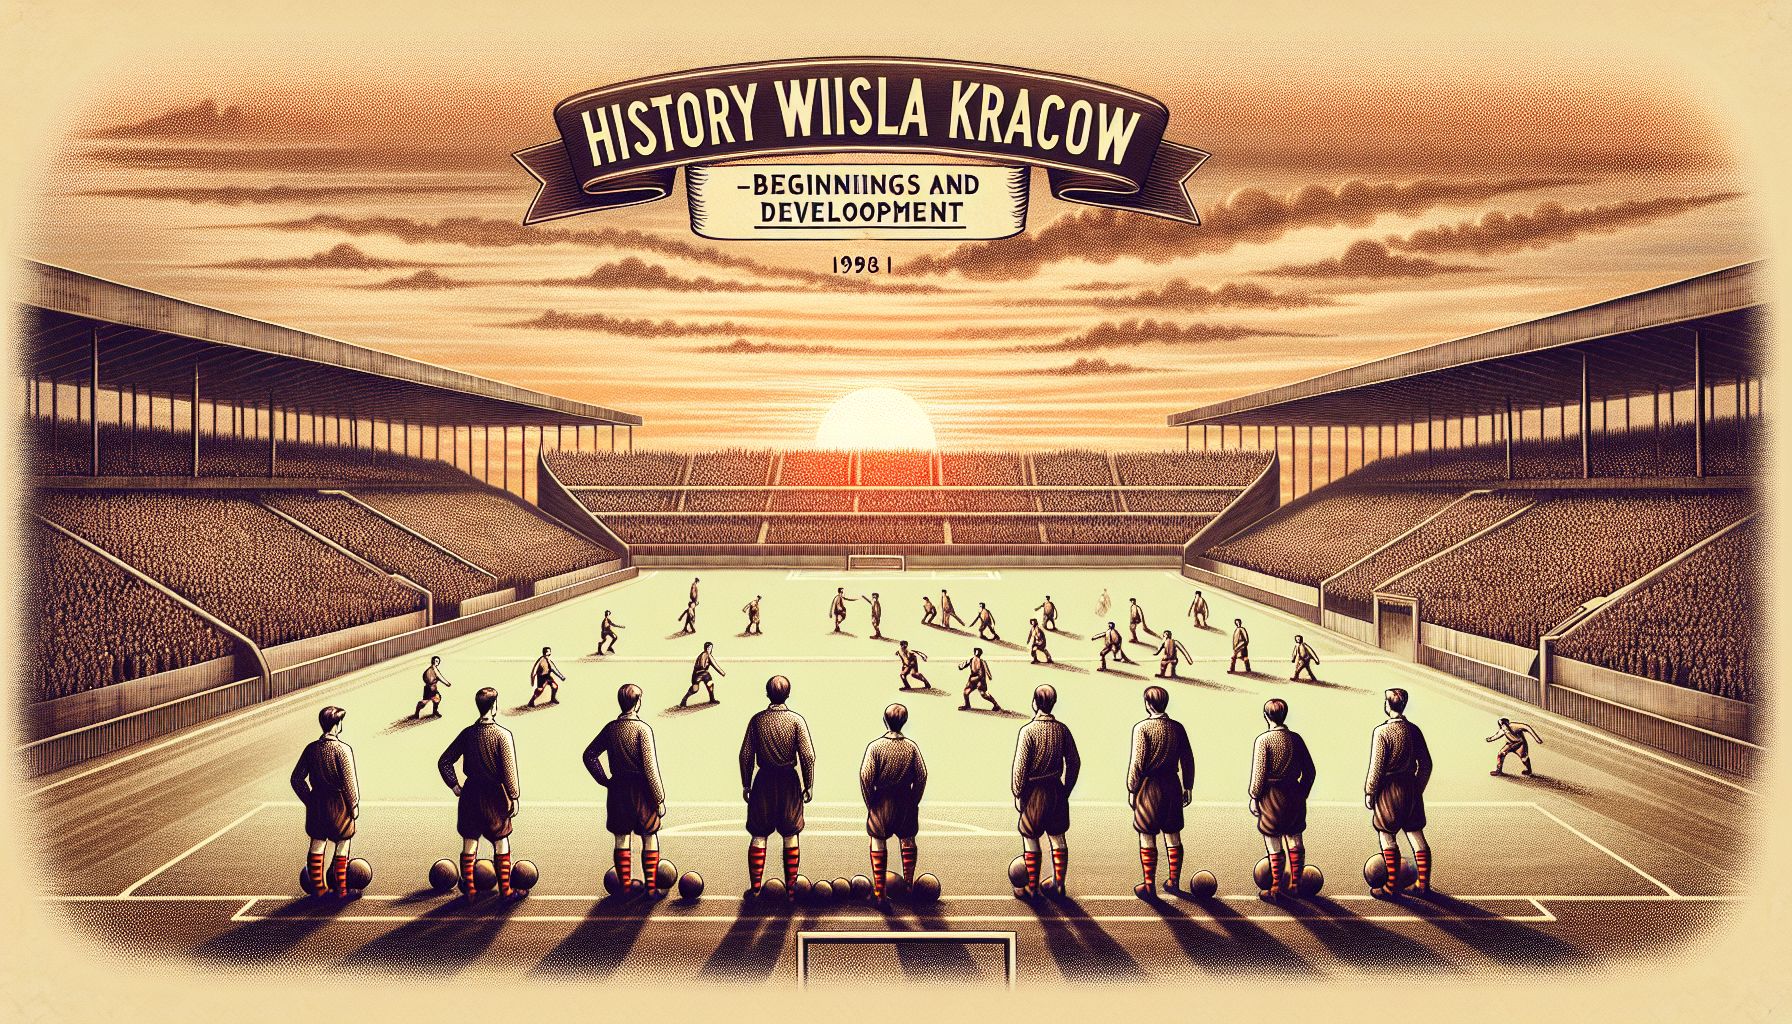 Historia klubu piłkarskiego Wisła Kraków - początki i rozwój